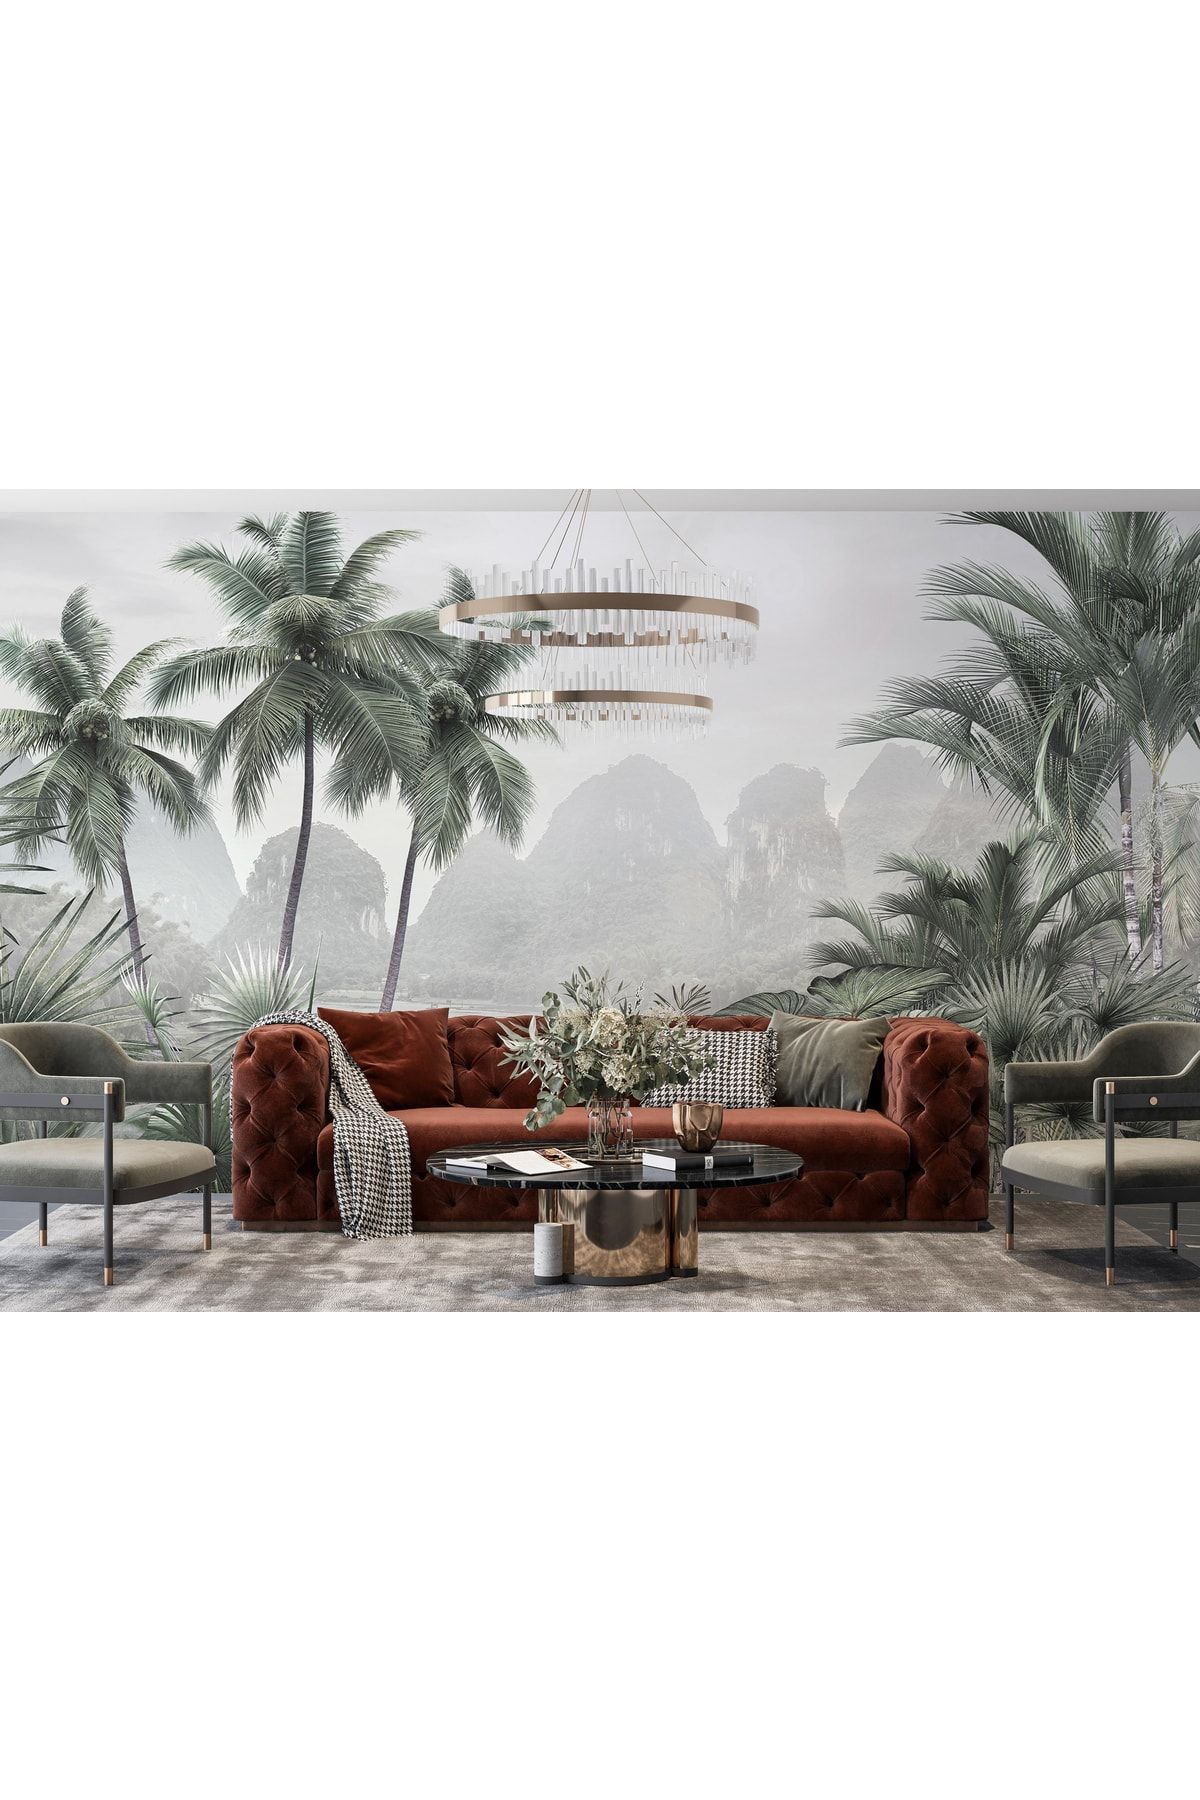 LOTUS AURA Palmiye Ağaçlı Duvar Kağıdı, Tropikal Manzaralı Duvar Resmi